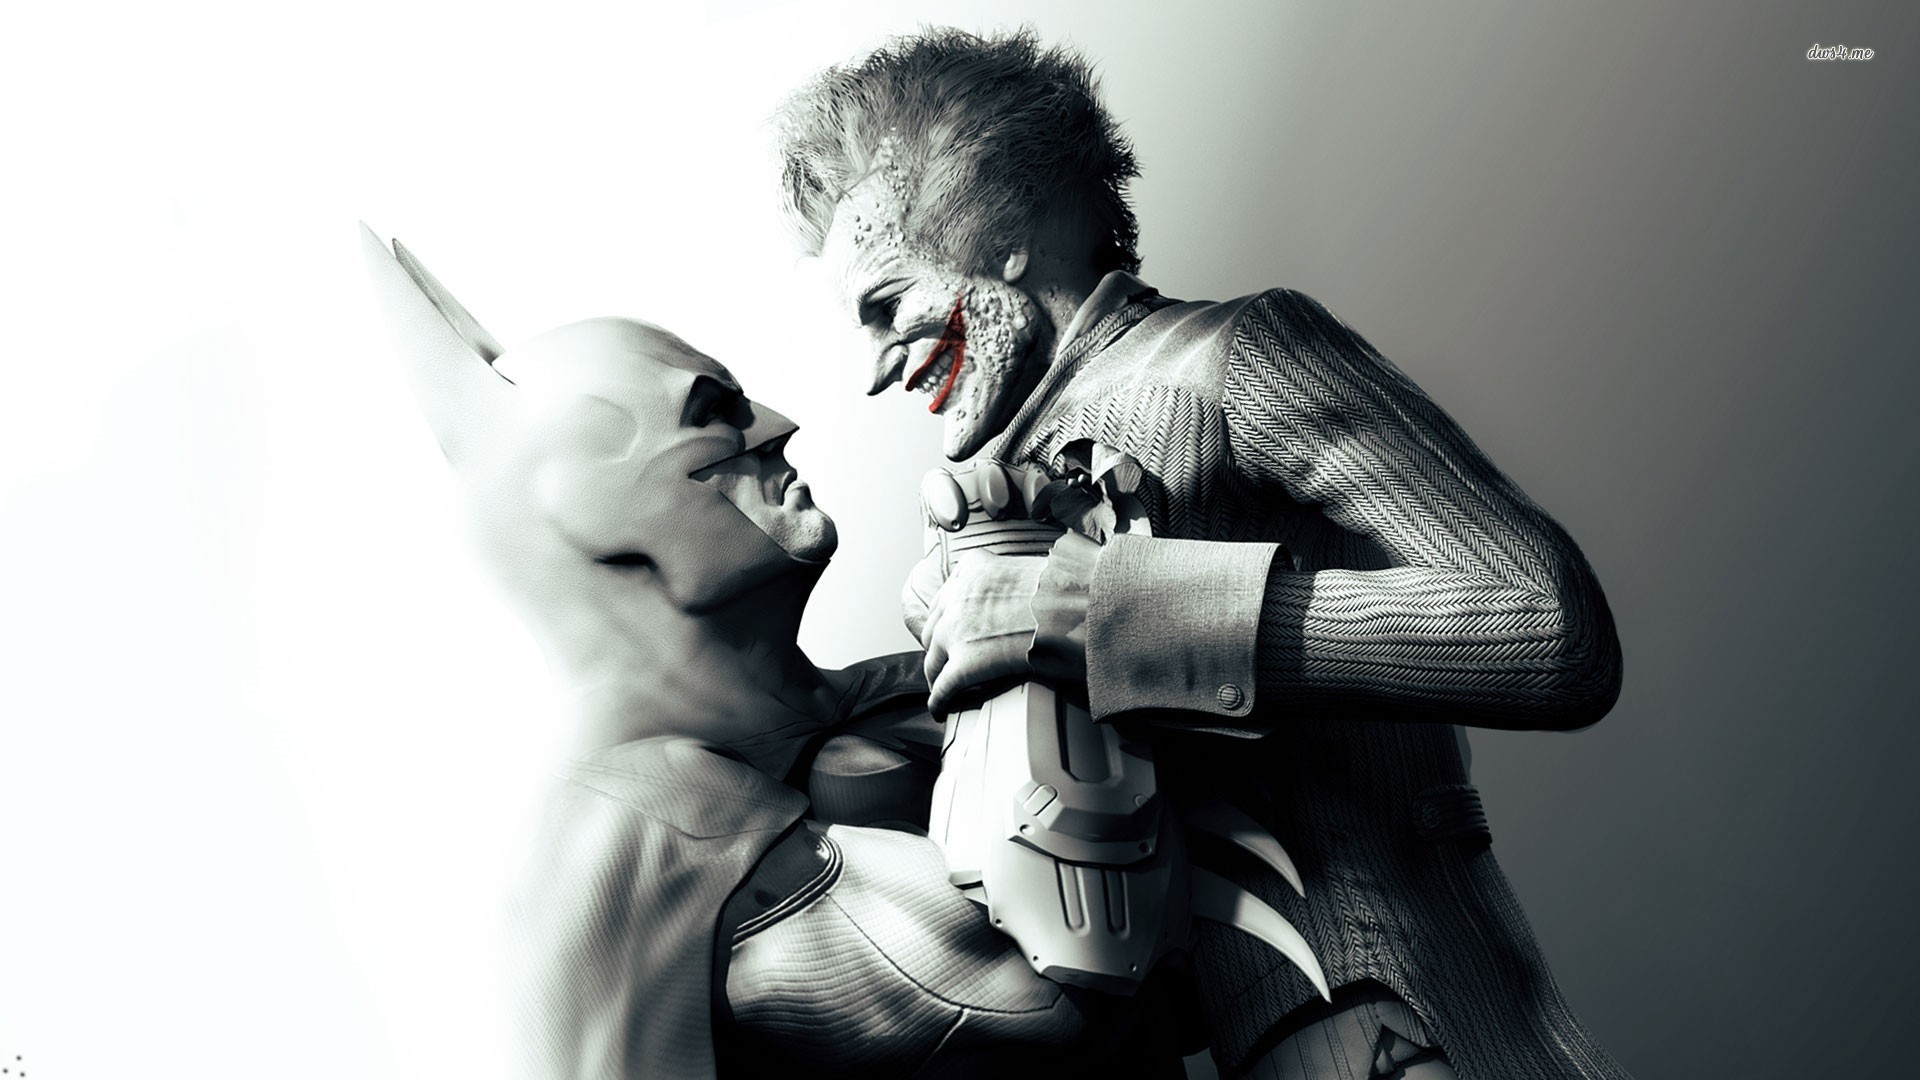 1920x1080 ... Batman Joker Wallpaper - QiGe87.com ...